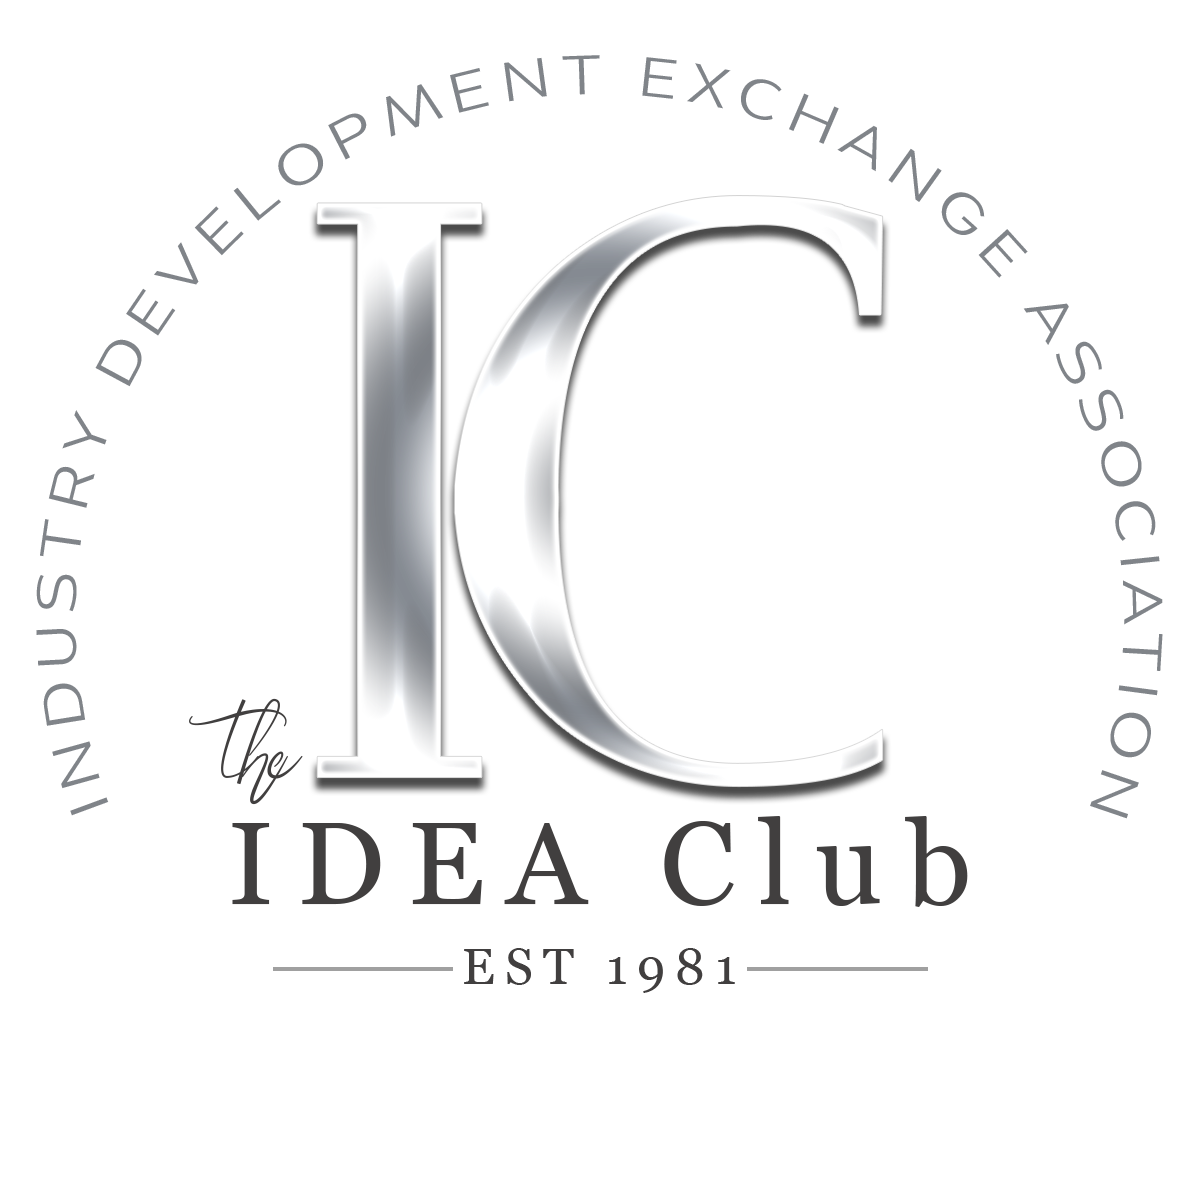 The IDEA Club